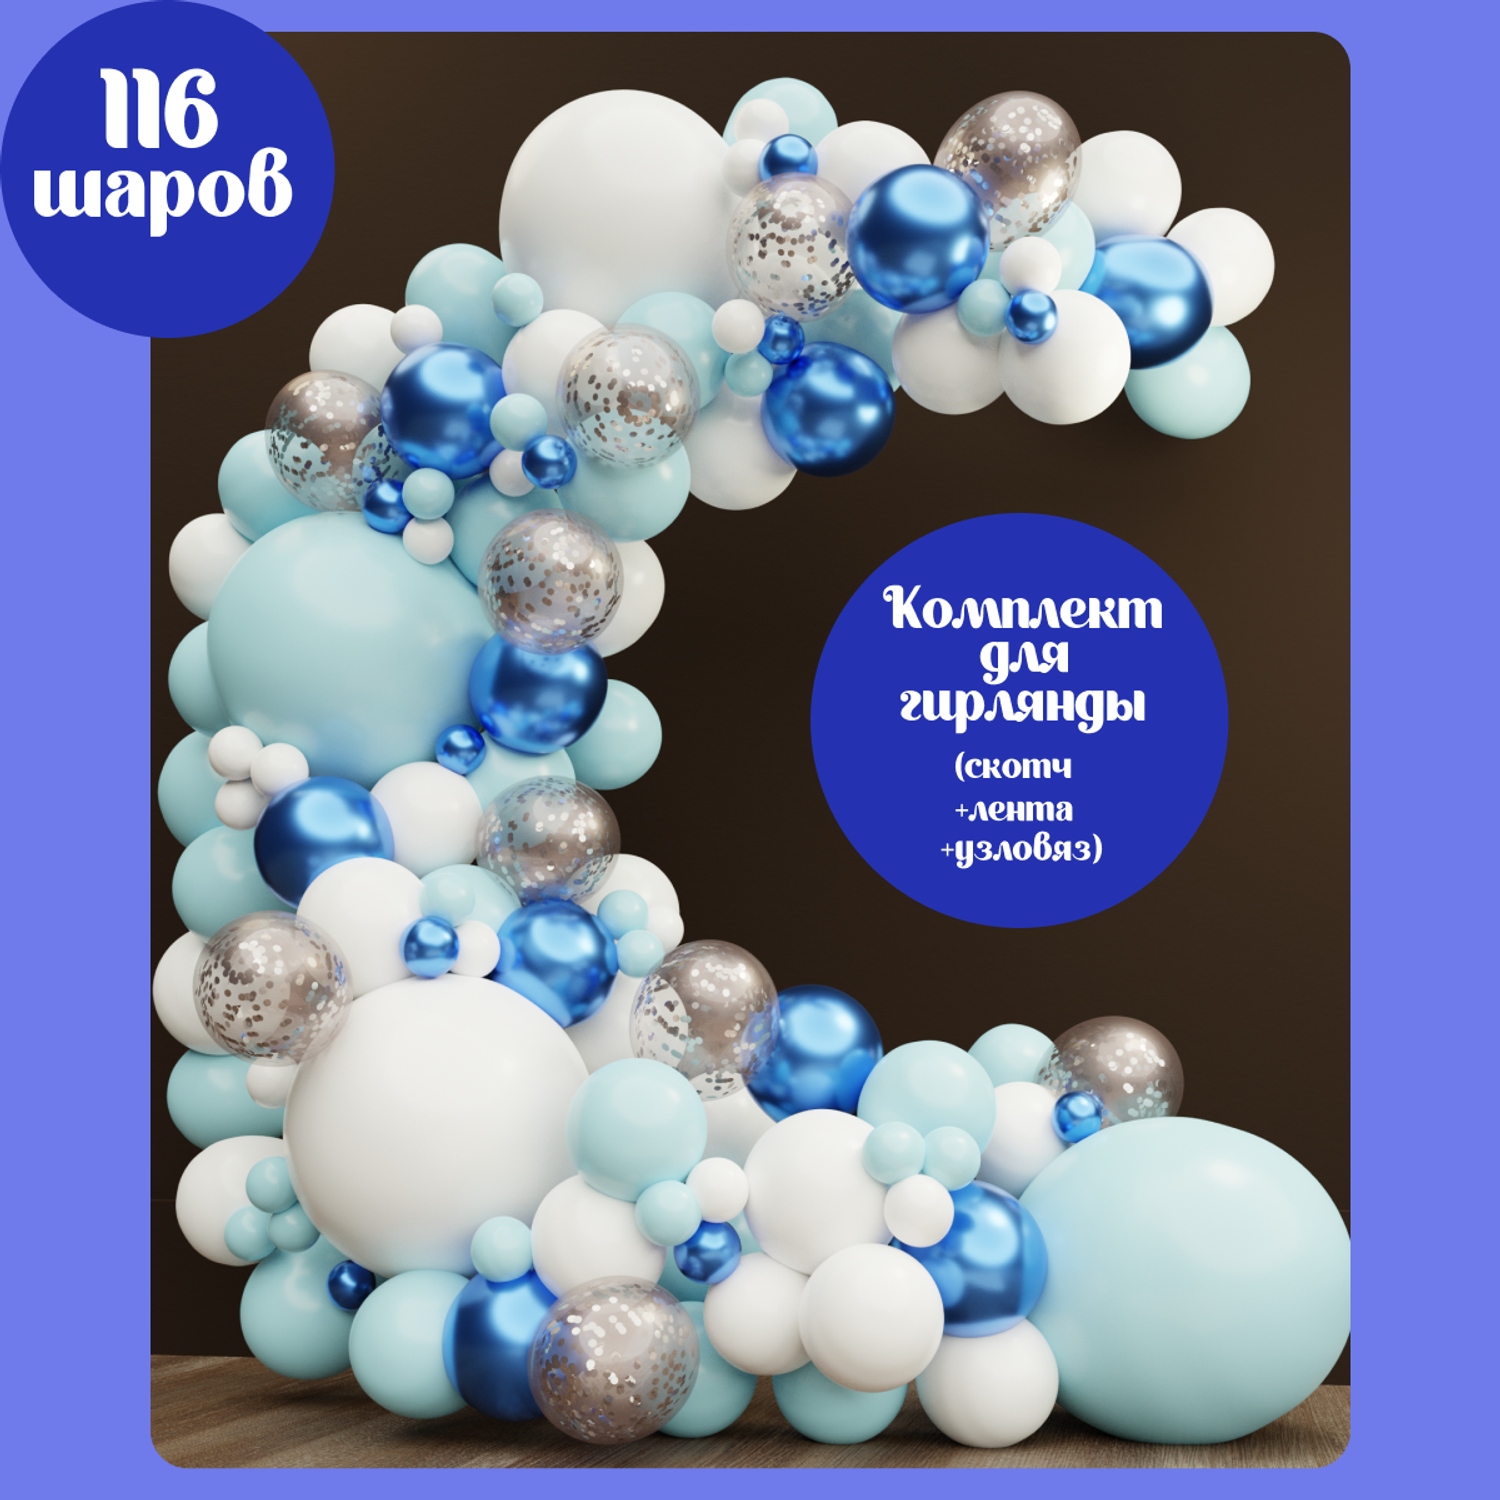 Воздушные шары на детский день рождения с доставкой по Санкт-Петербургу